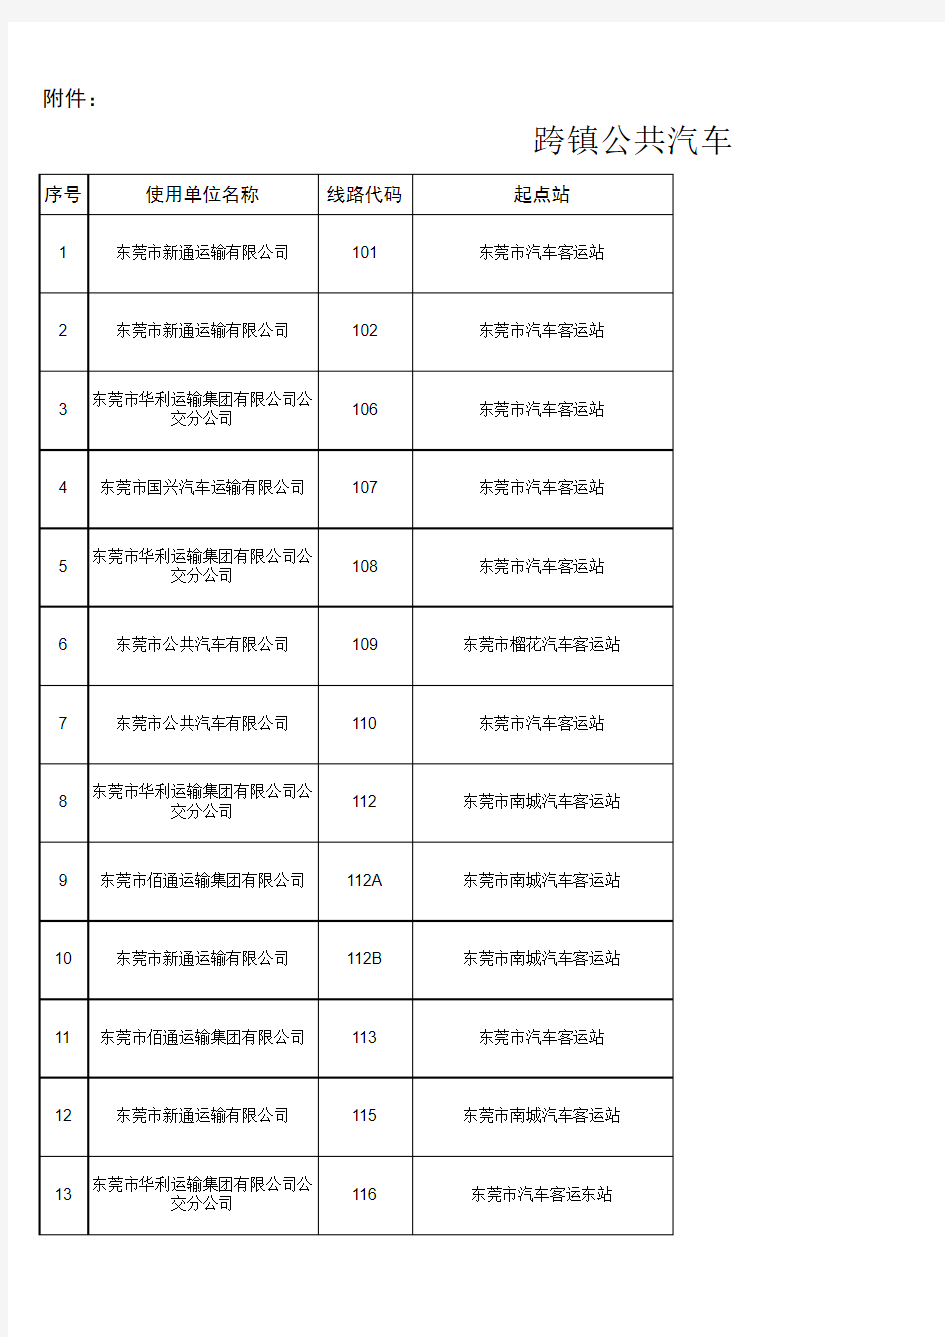 东莞跨镇公共汽车线路一览表